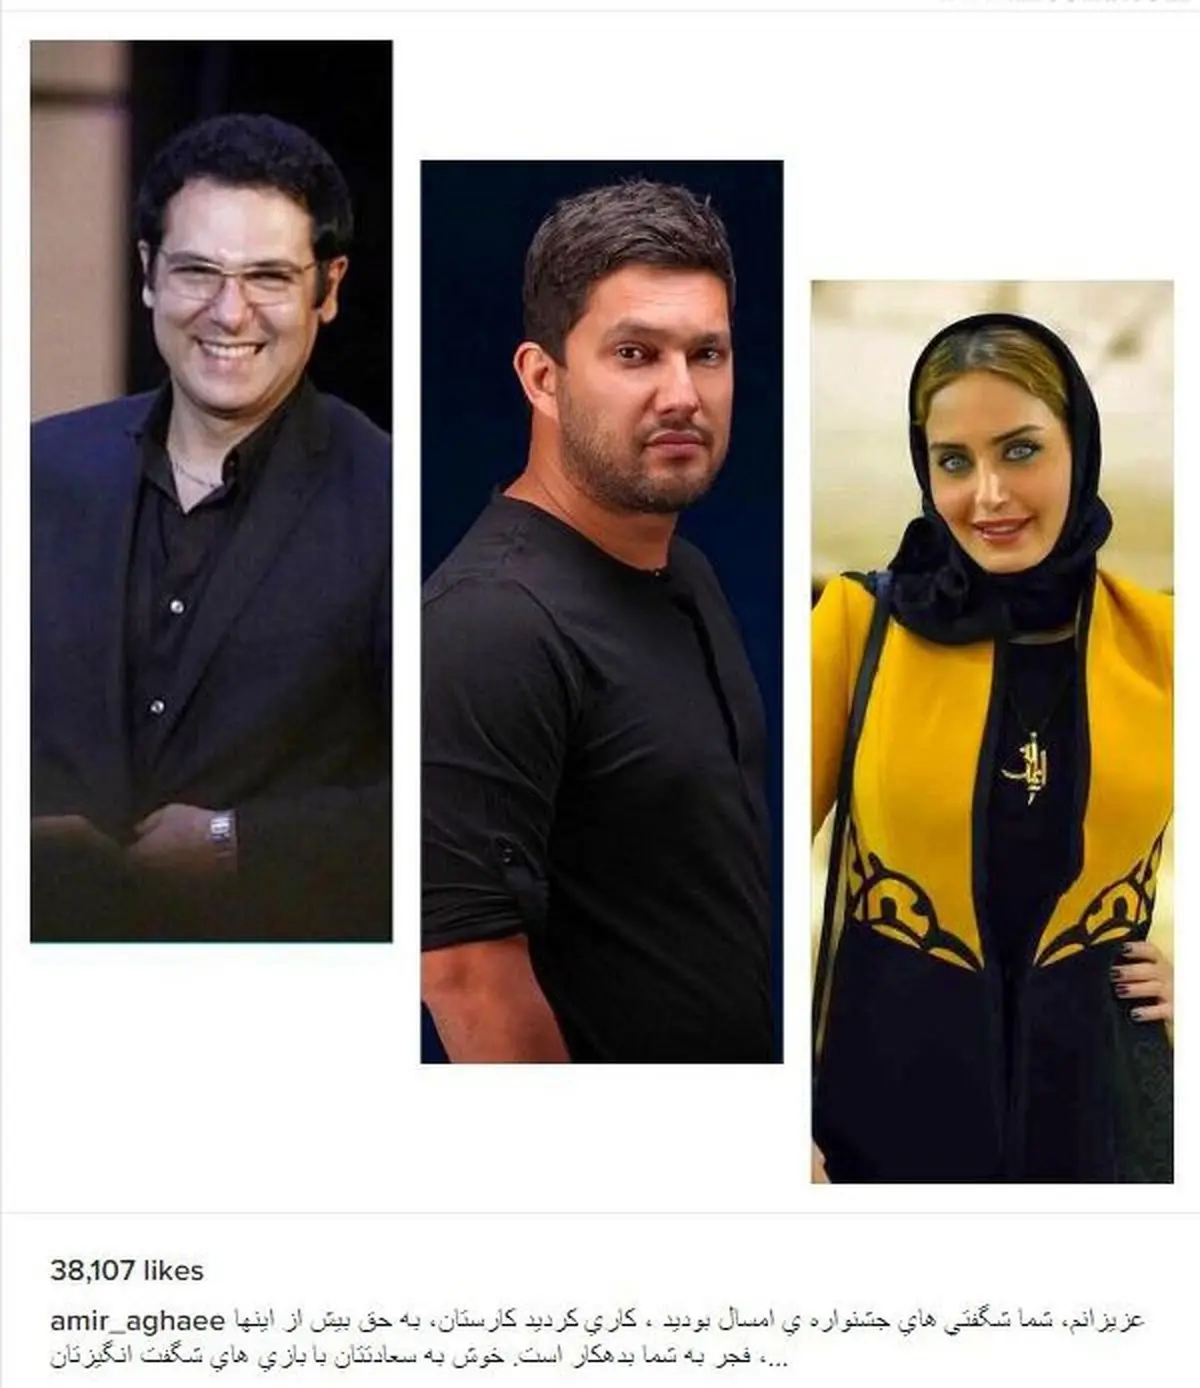 امیر آقایی، این سه بازیگر را شگفتی های جشنواره معرفی کرد (عکس)